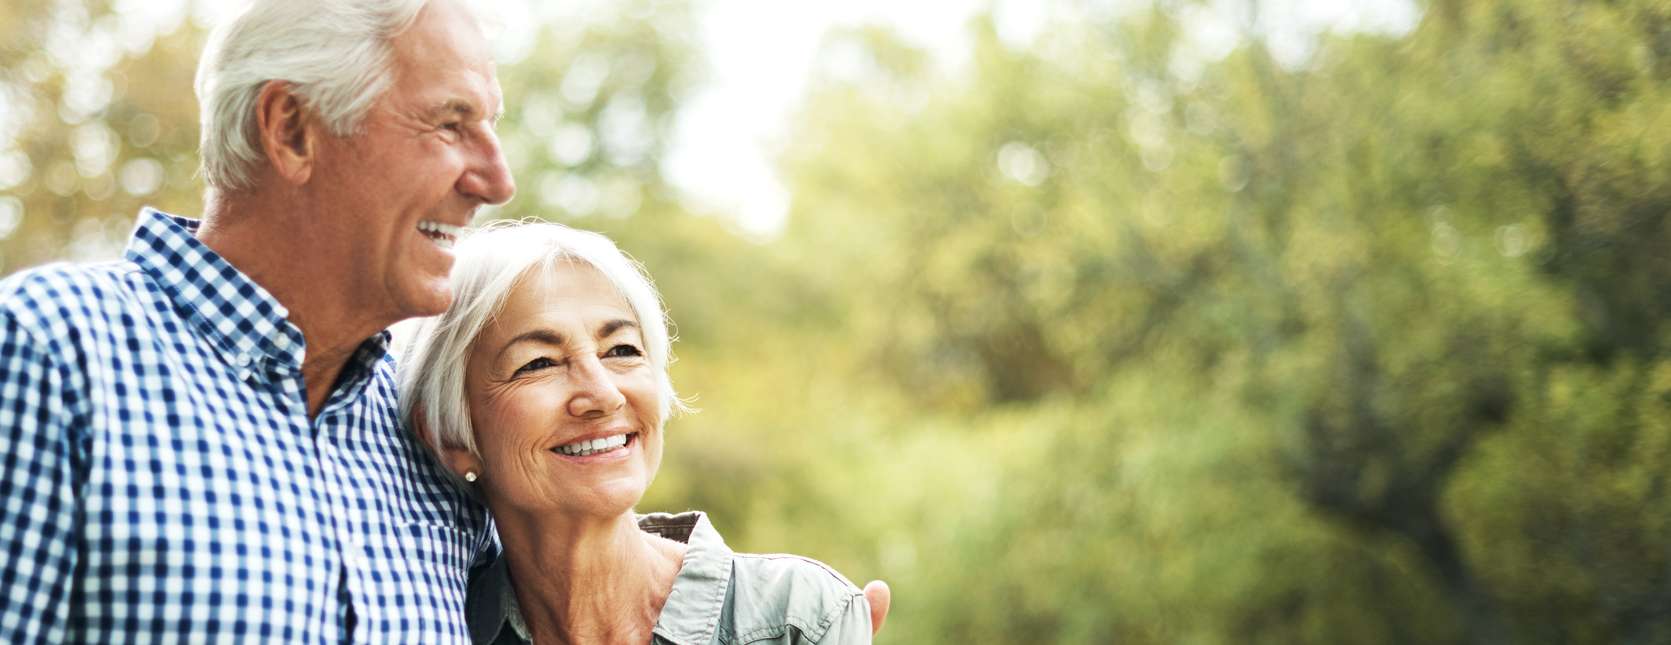 Allianz - Altersvorsorge - Tipps für den Ruhestand - Älteres Paar lächelnd im Park